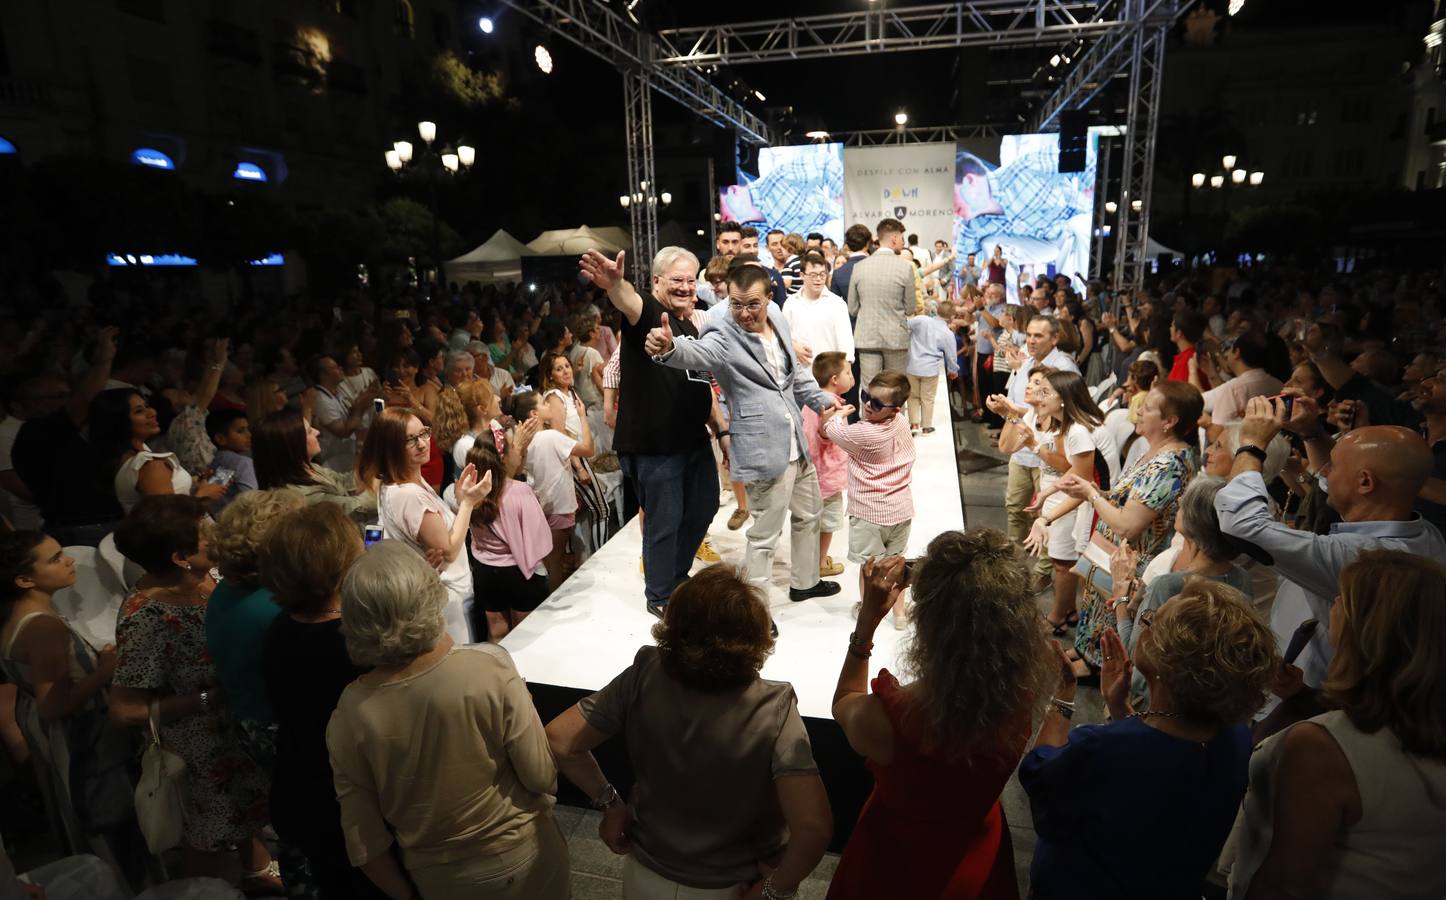 El desfile de Álvaro Moreno con chicos Down de la «Shopping Night» de Córdoba, en imágenes